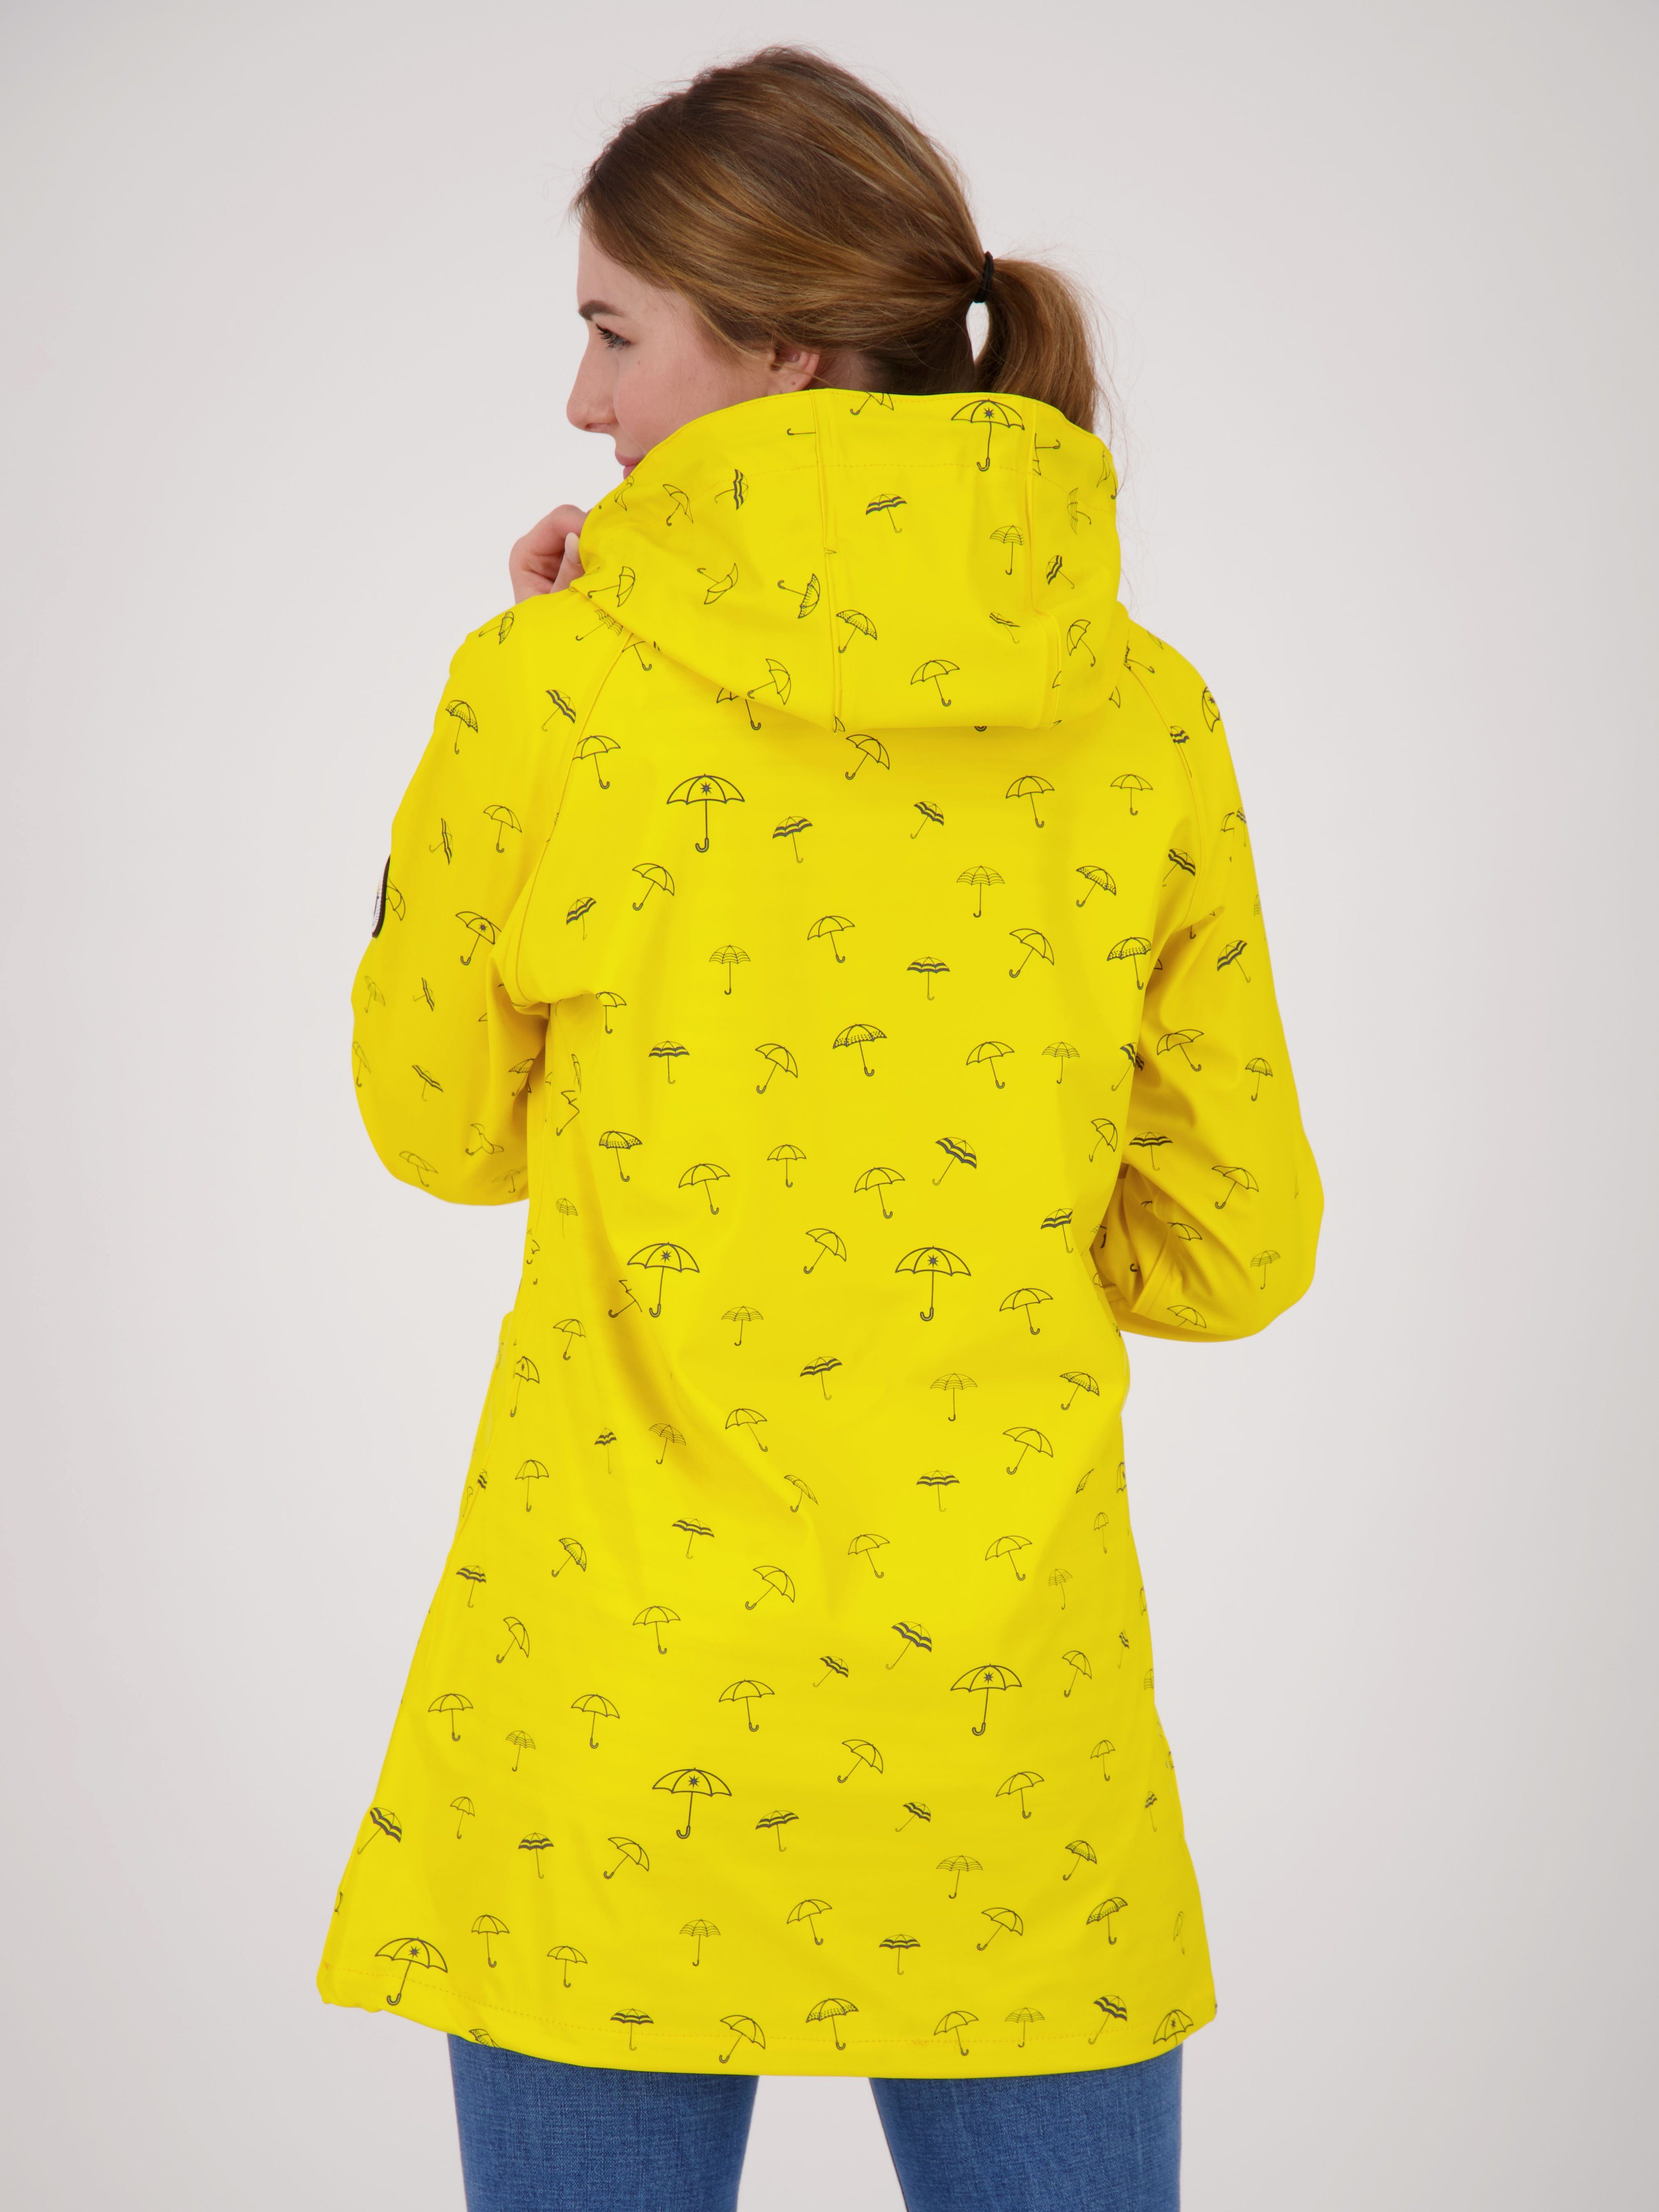 WIZZARD auch WOMEN UMBR in Active Friesennerz Großen Größen PEAK DEPROC gelb erhältlich Regenjacke